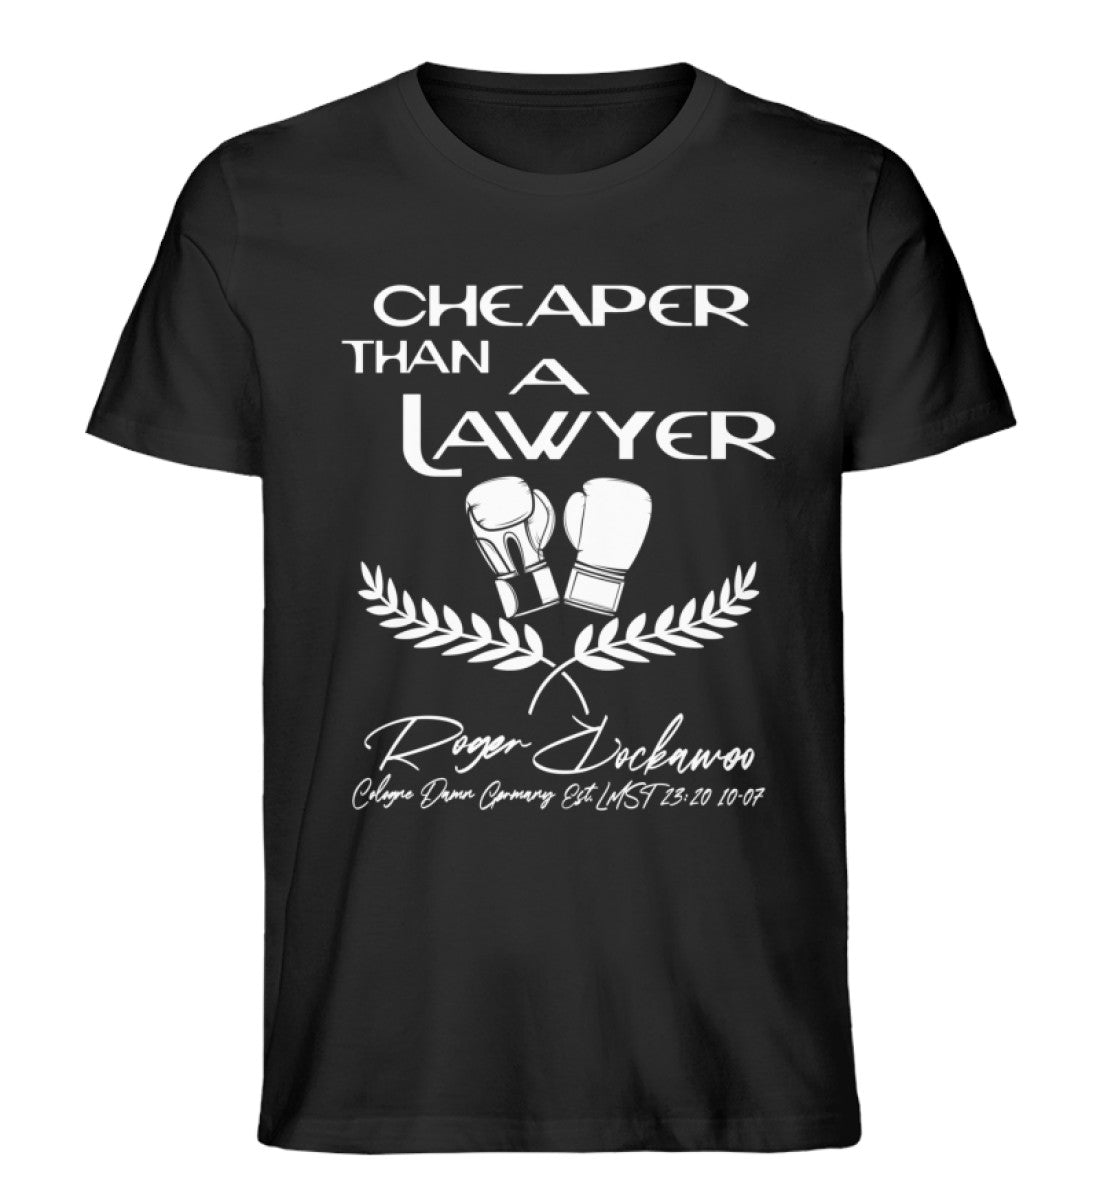 Schwarzes T-Shirt für Frauen und Männer bedruckt mit dem Design der Roger Rockawoo Kollektion Boxing Cheaper than a lawyer